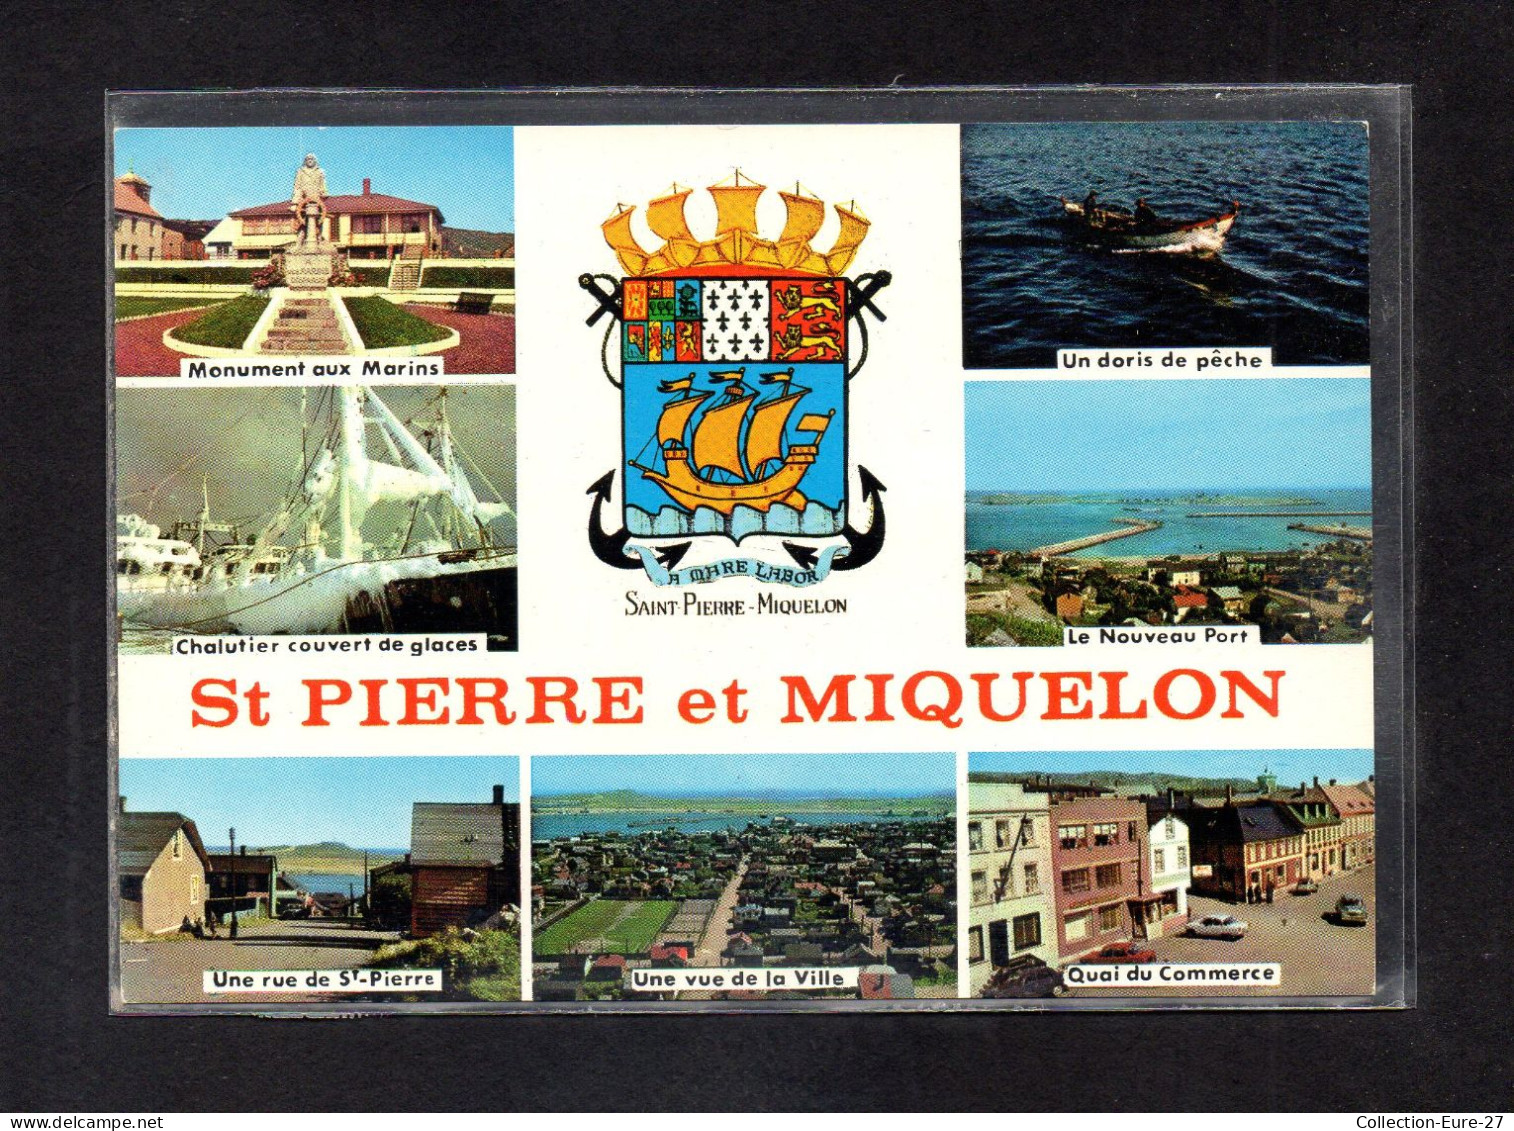 (16/04/24) SAINT PIERRE ET MIQUELON - Saint Pierre And Miquelon